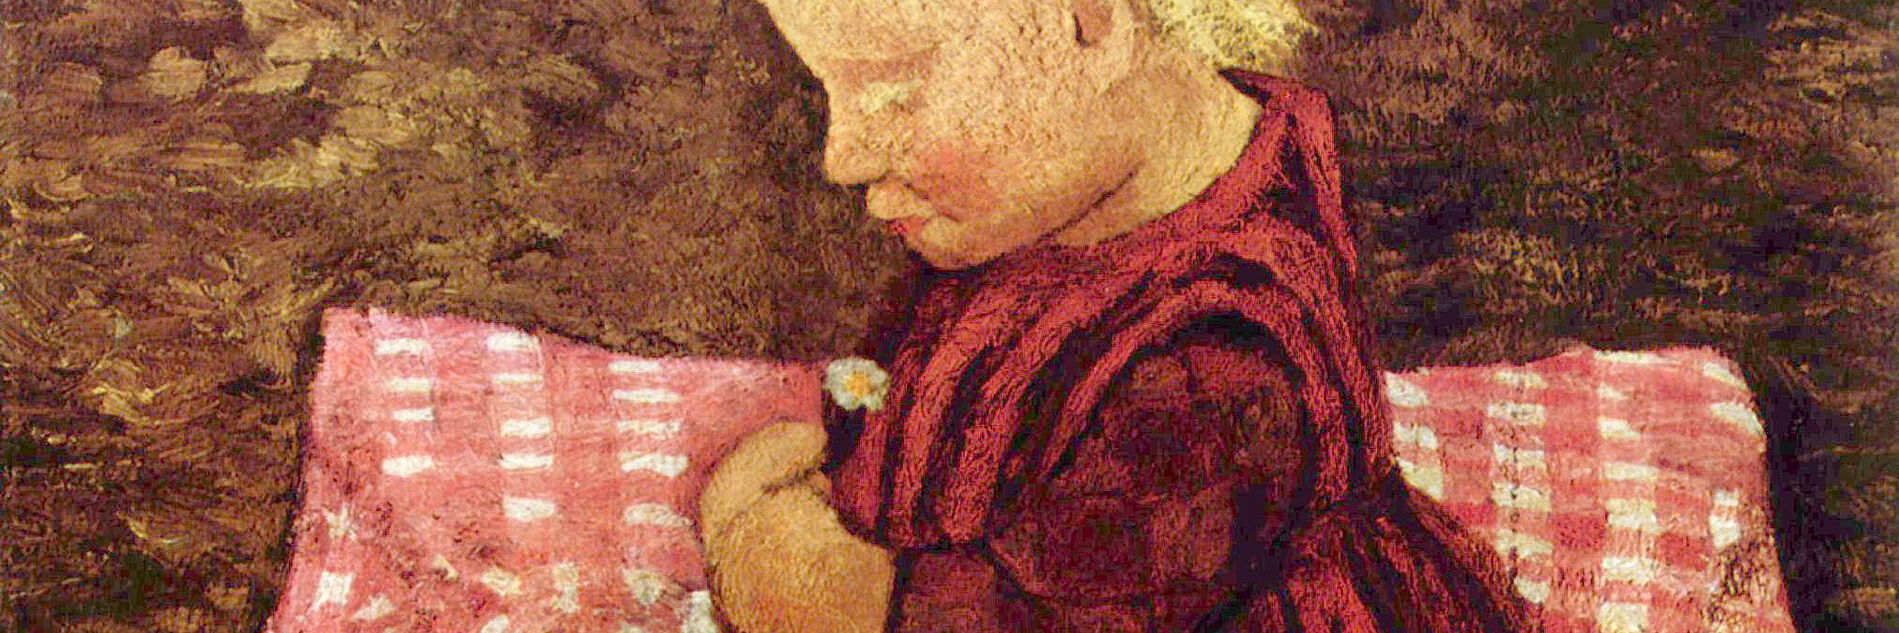 Paula Modersohn-Becker - Bauernkind auf rotgewürfeltem Kissen